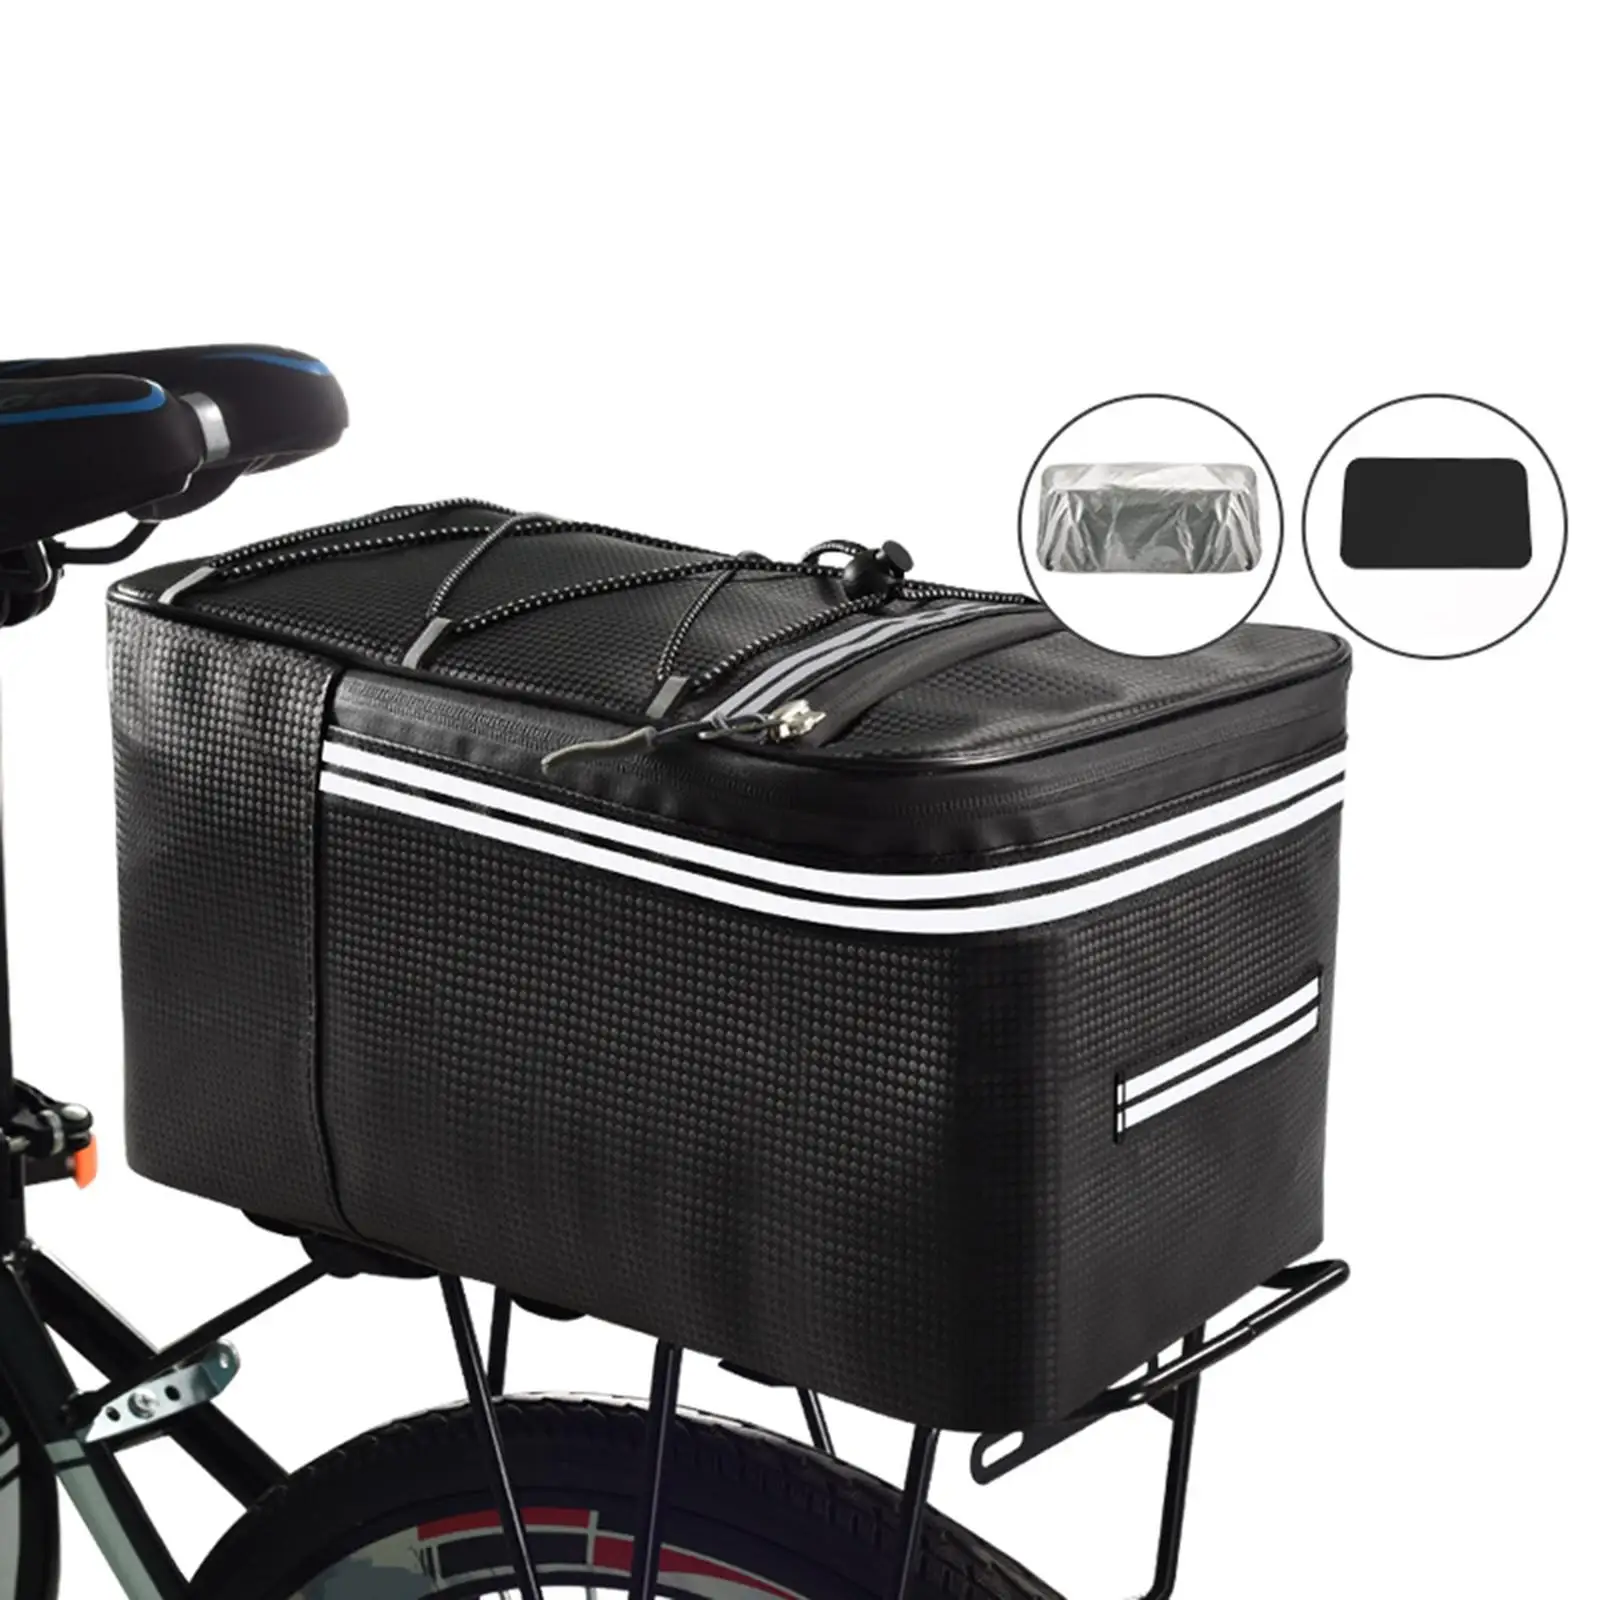 Bike Trunk Bags Bike Rack Rear Seat Bags Bike Pannier Bag Waterproof Carrier Pack Handbag Luggage Package for Traveling Cycling